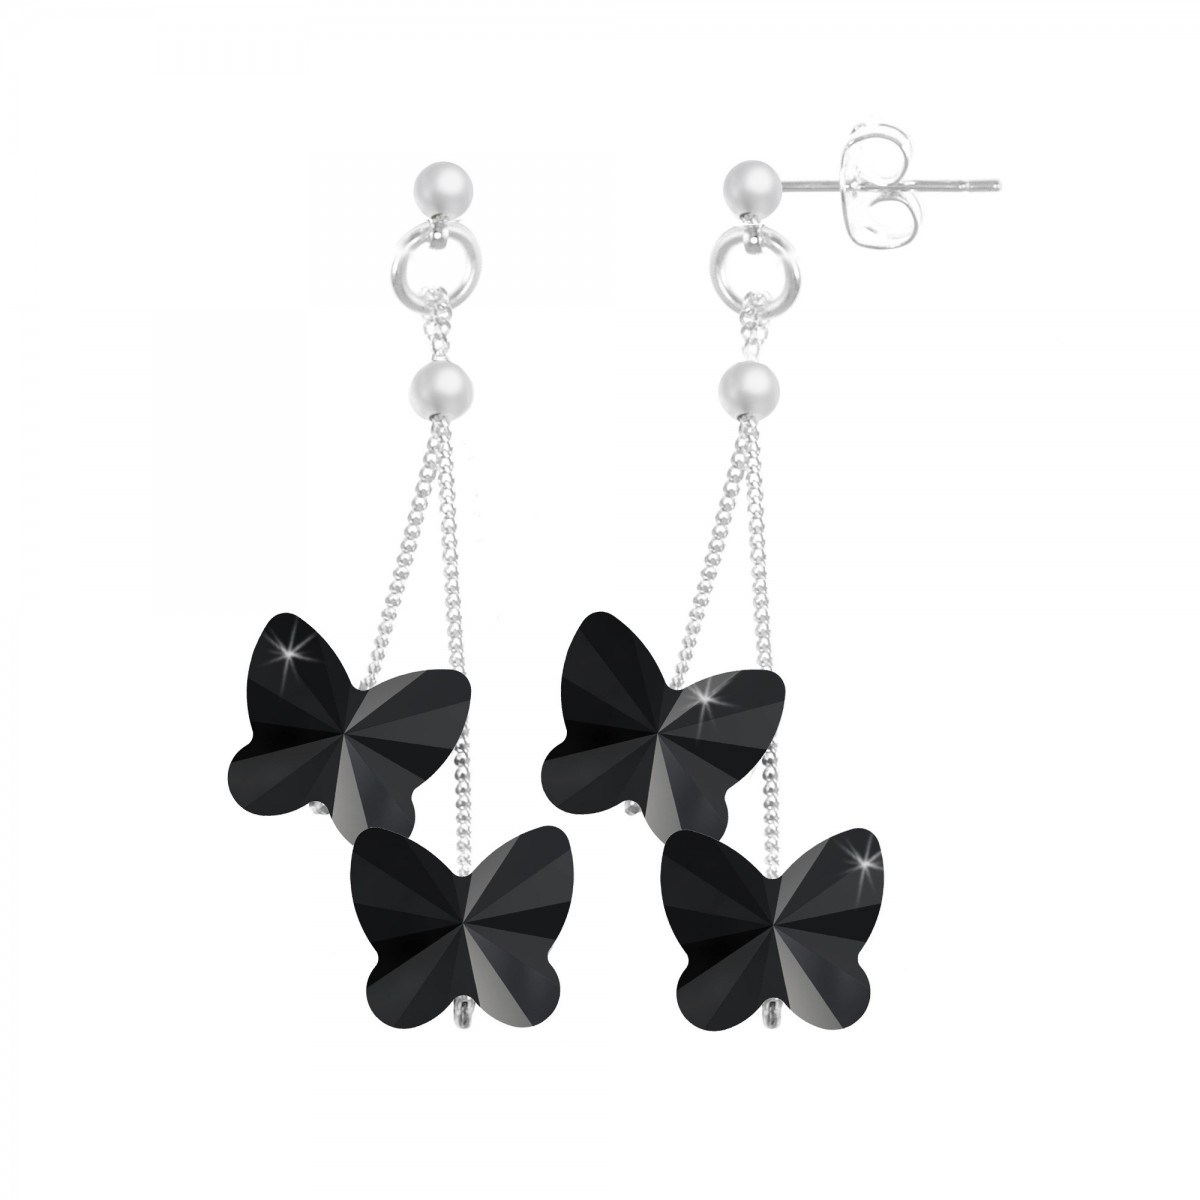 Boucles d'oreilles SC Crystal papillons noirs ornées de Cristaux scintillants